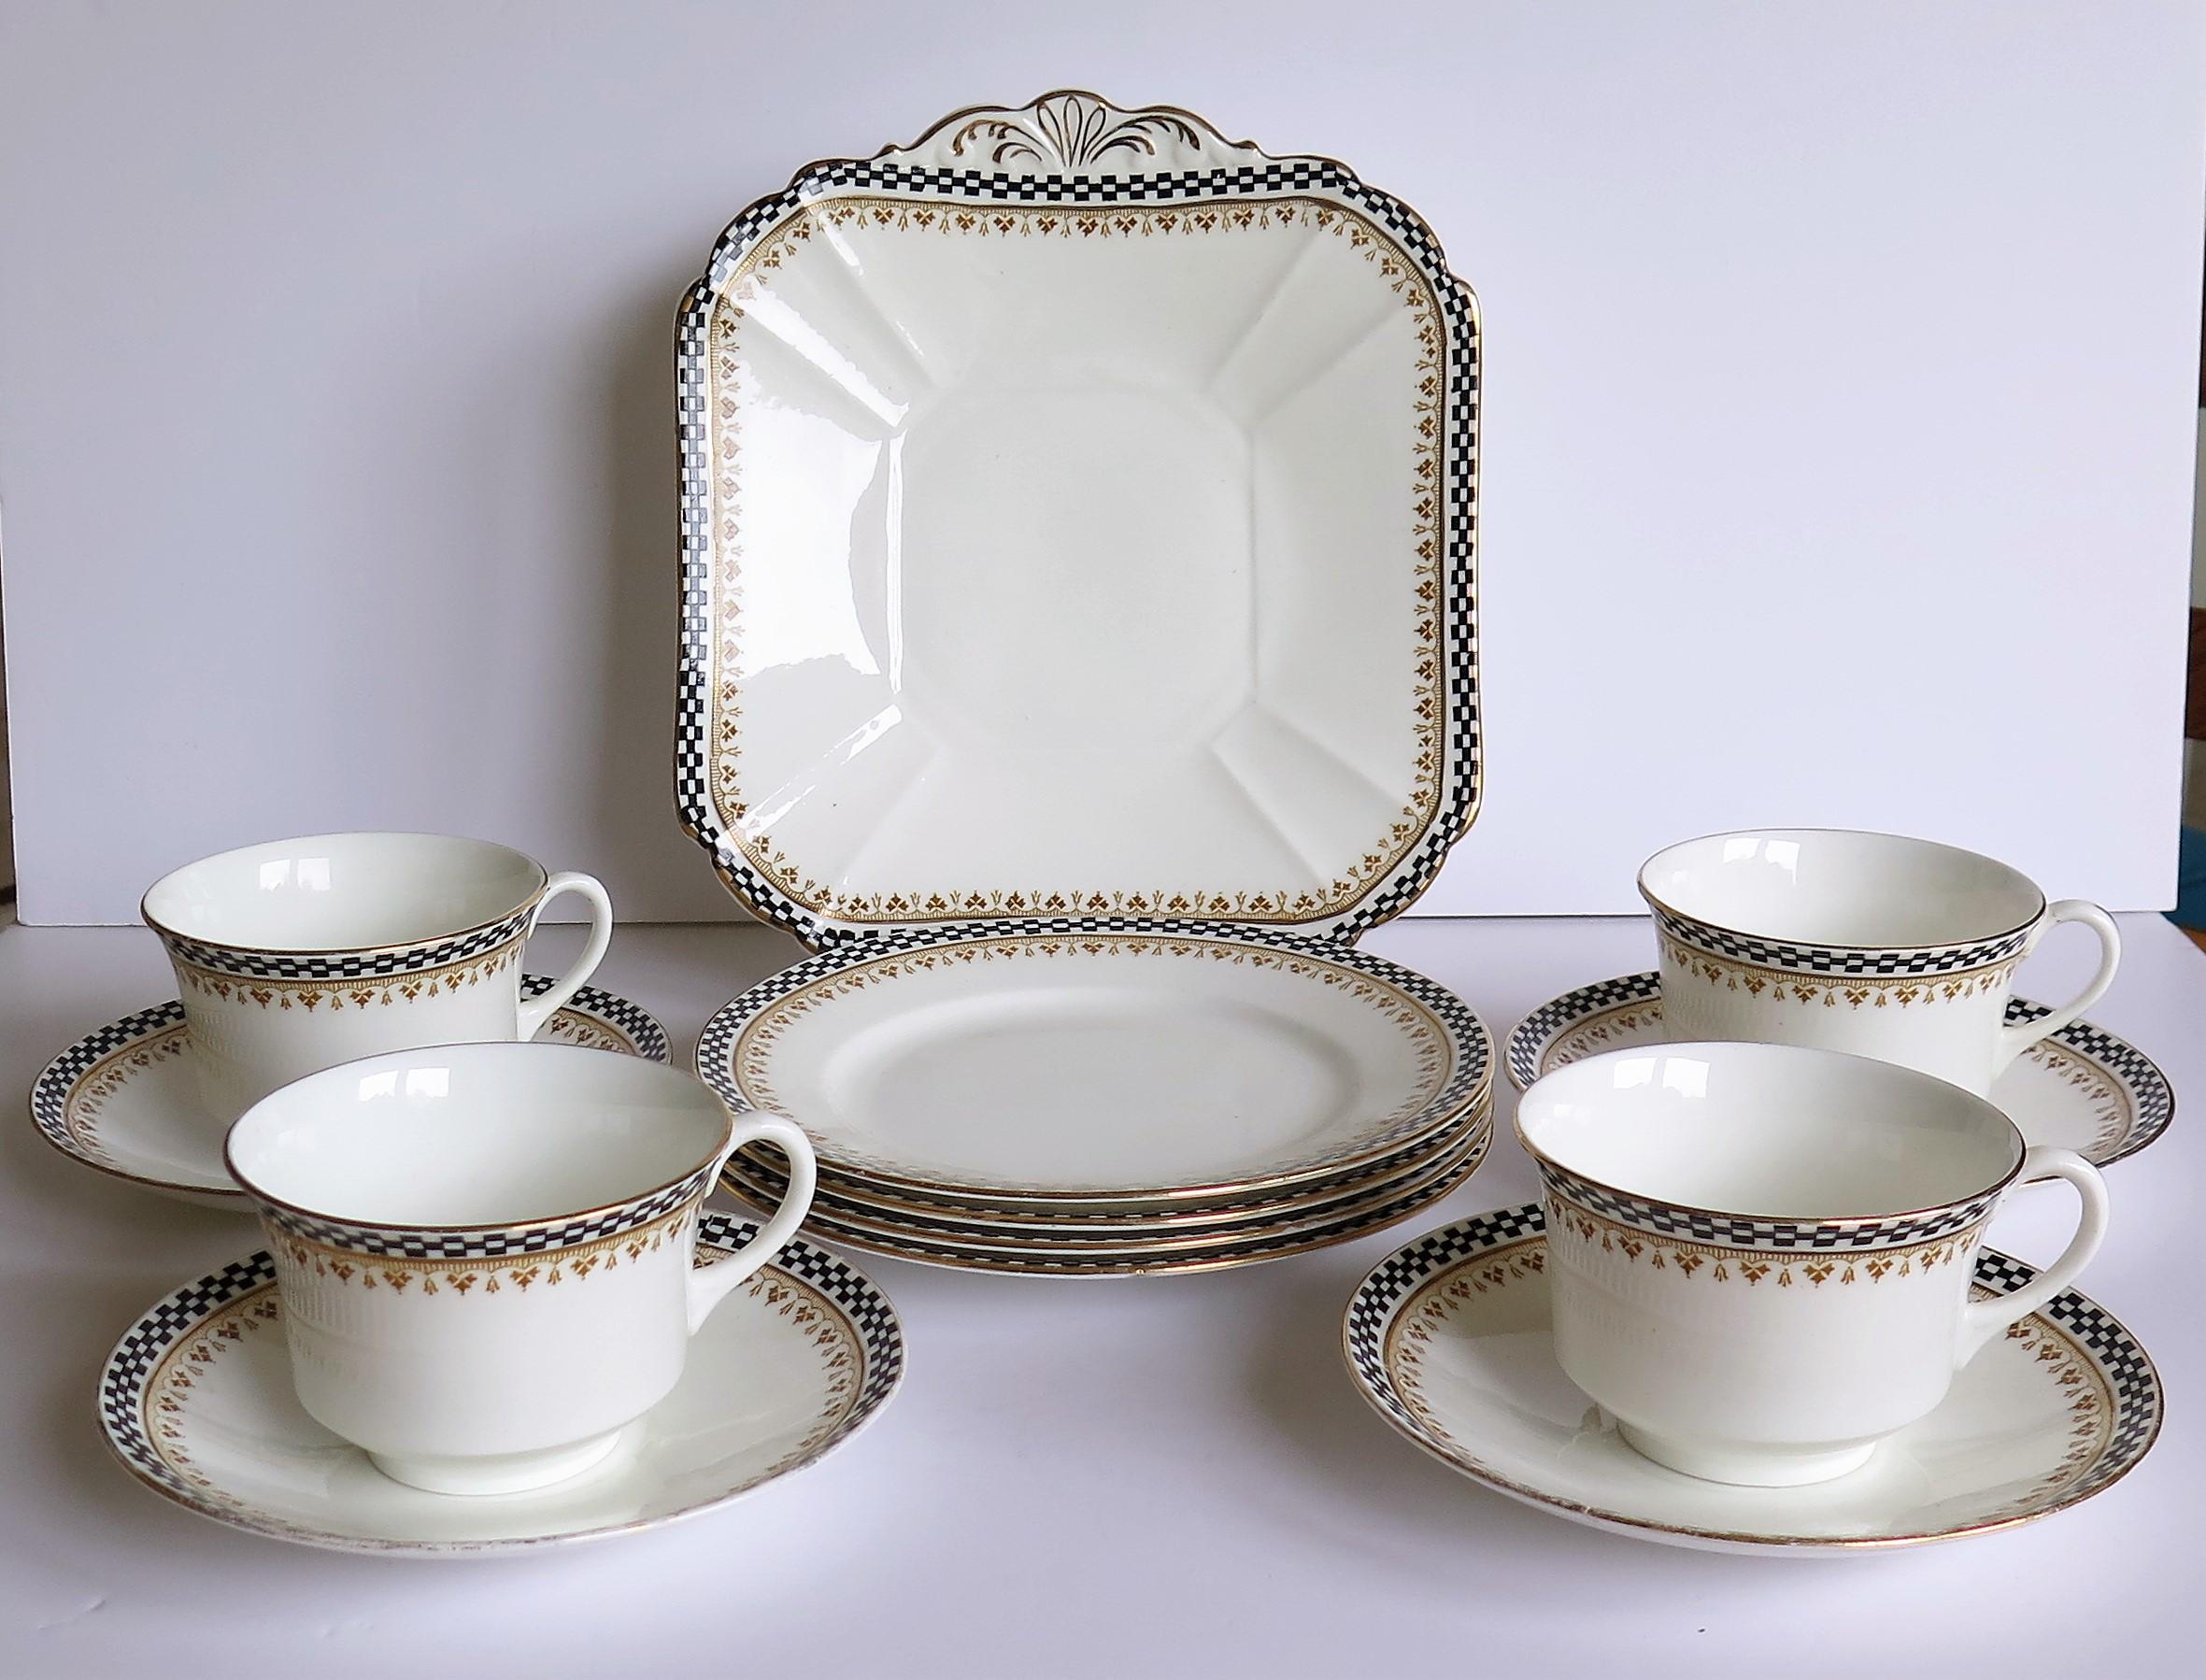 Service à thé de 13 pièces en porcelaine de Shelley Potteries Ltd, Staffordshire, Angleterre, au motif frappant et de la période Art Déco, vers 1920.

Le service à thé présente un audacieux motif géométrique Art Déco à carreaux noirs et blancs, avec